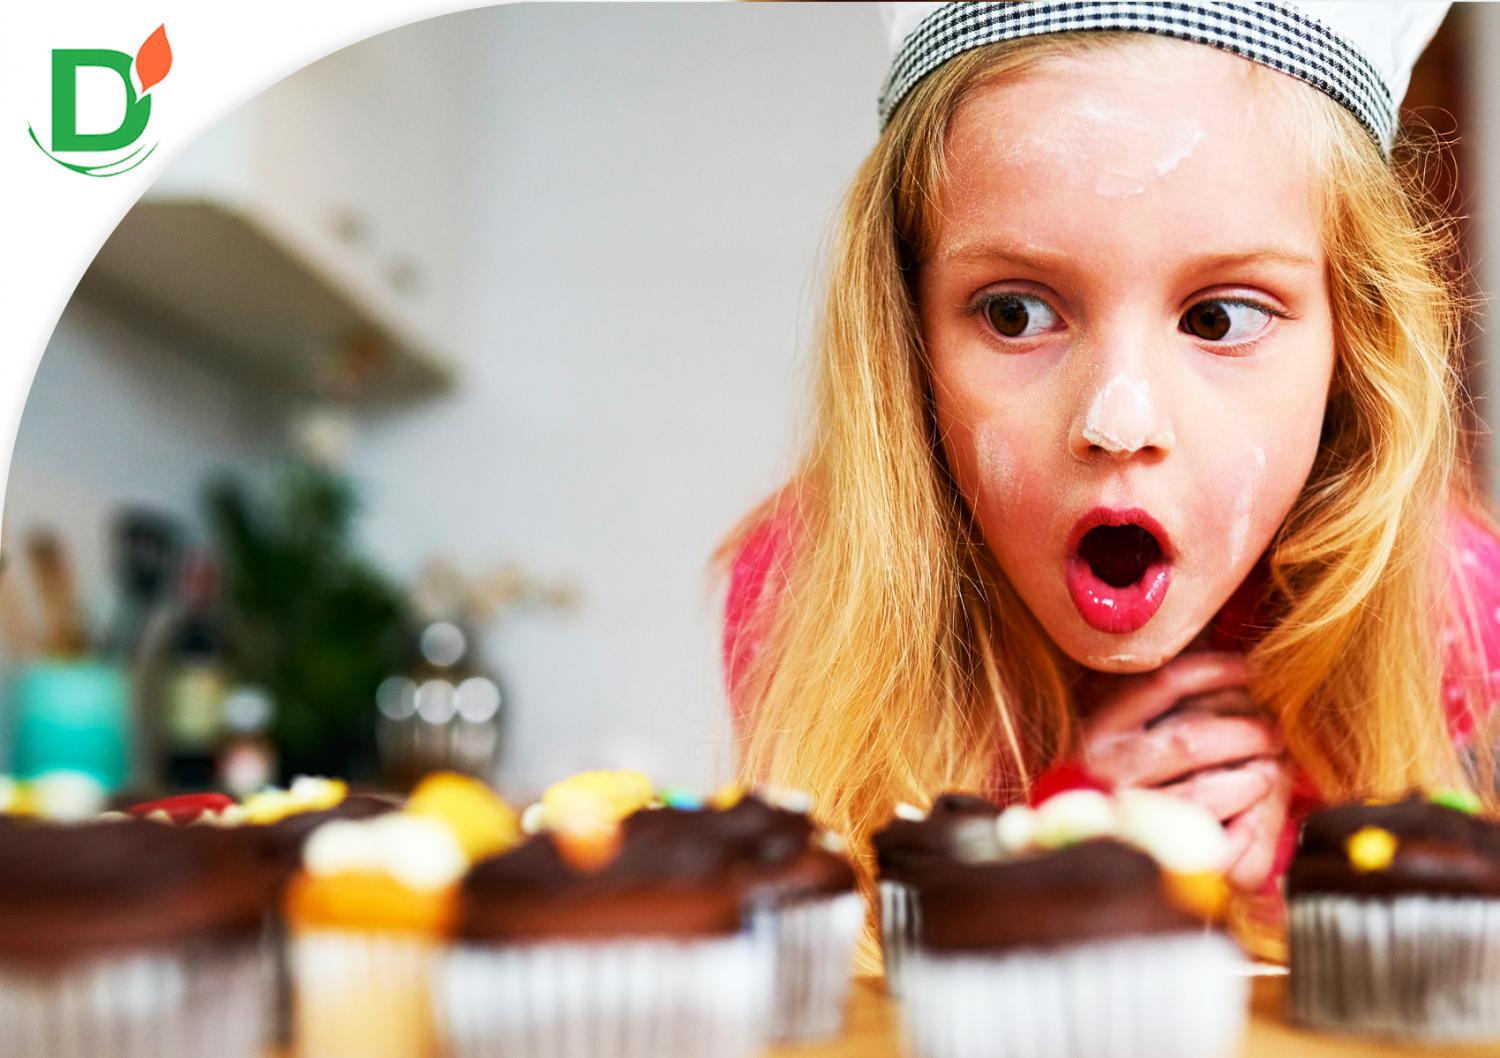 Дети и сладости во время гипо: быть или не быть